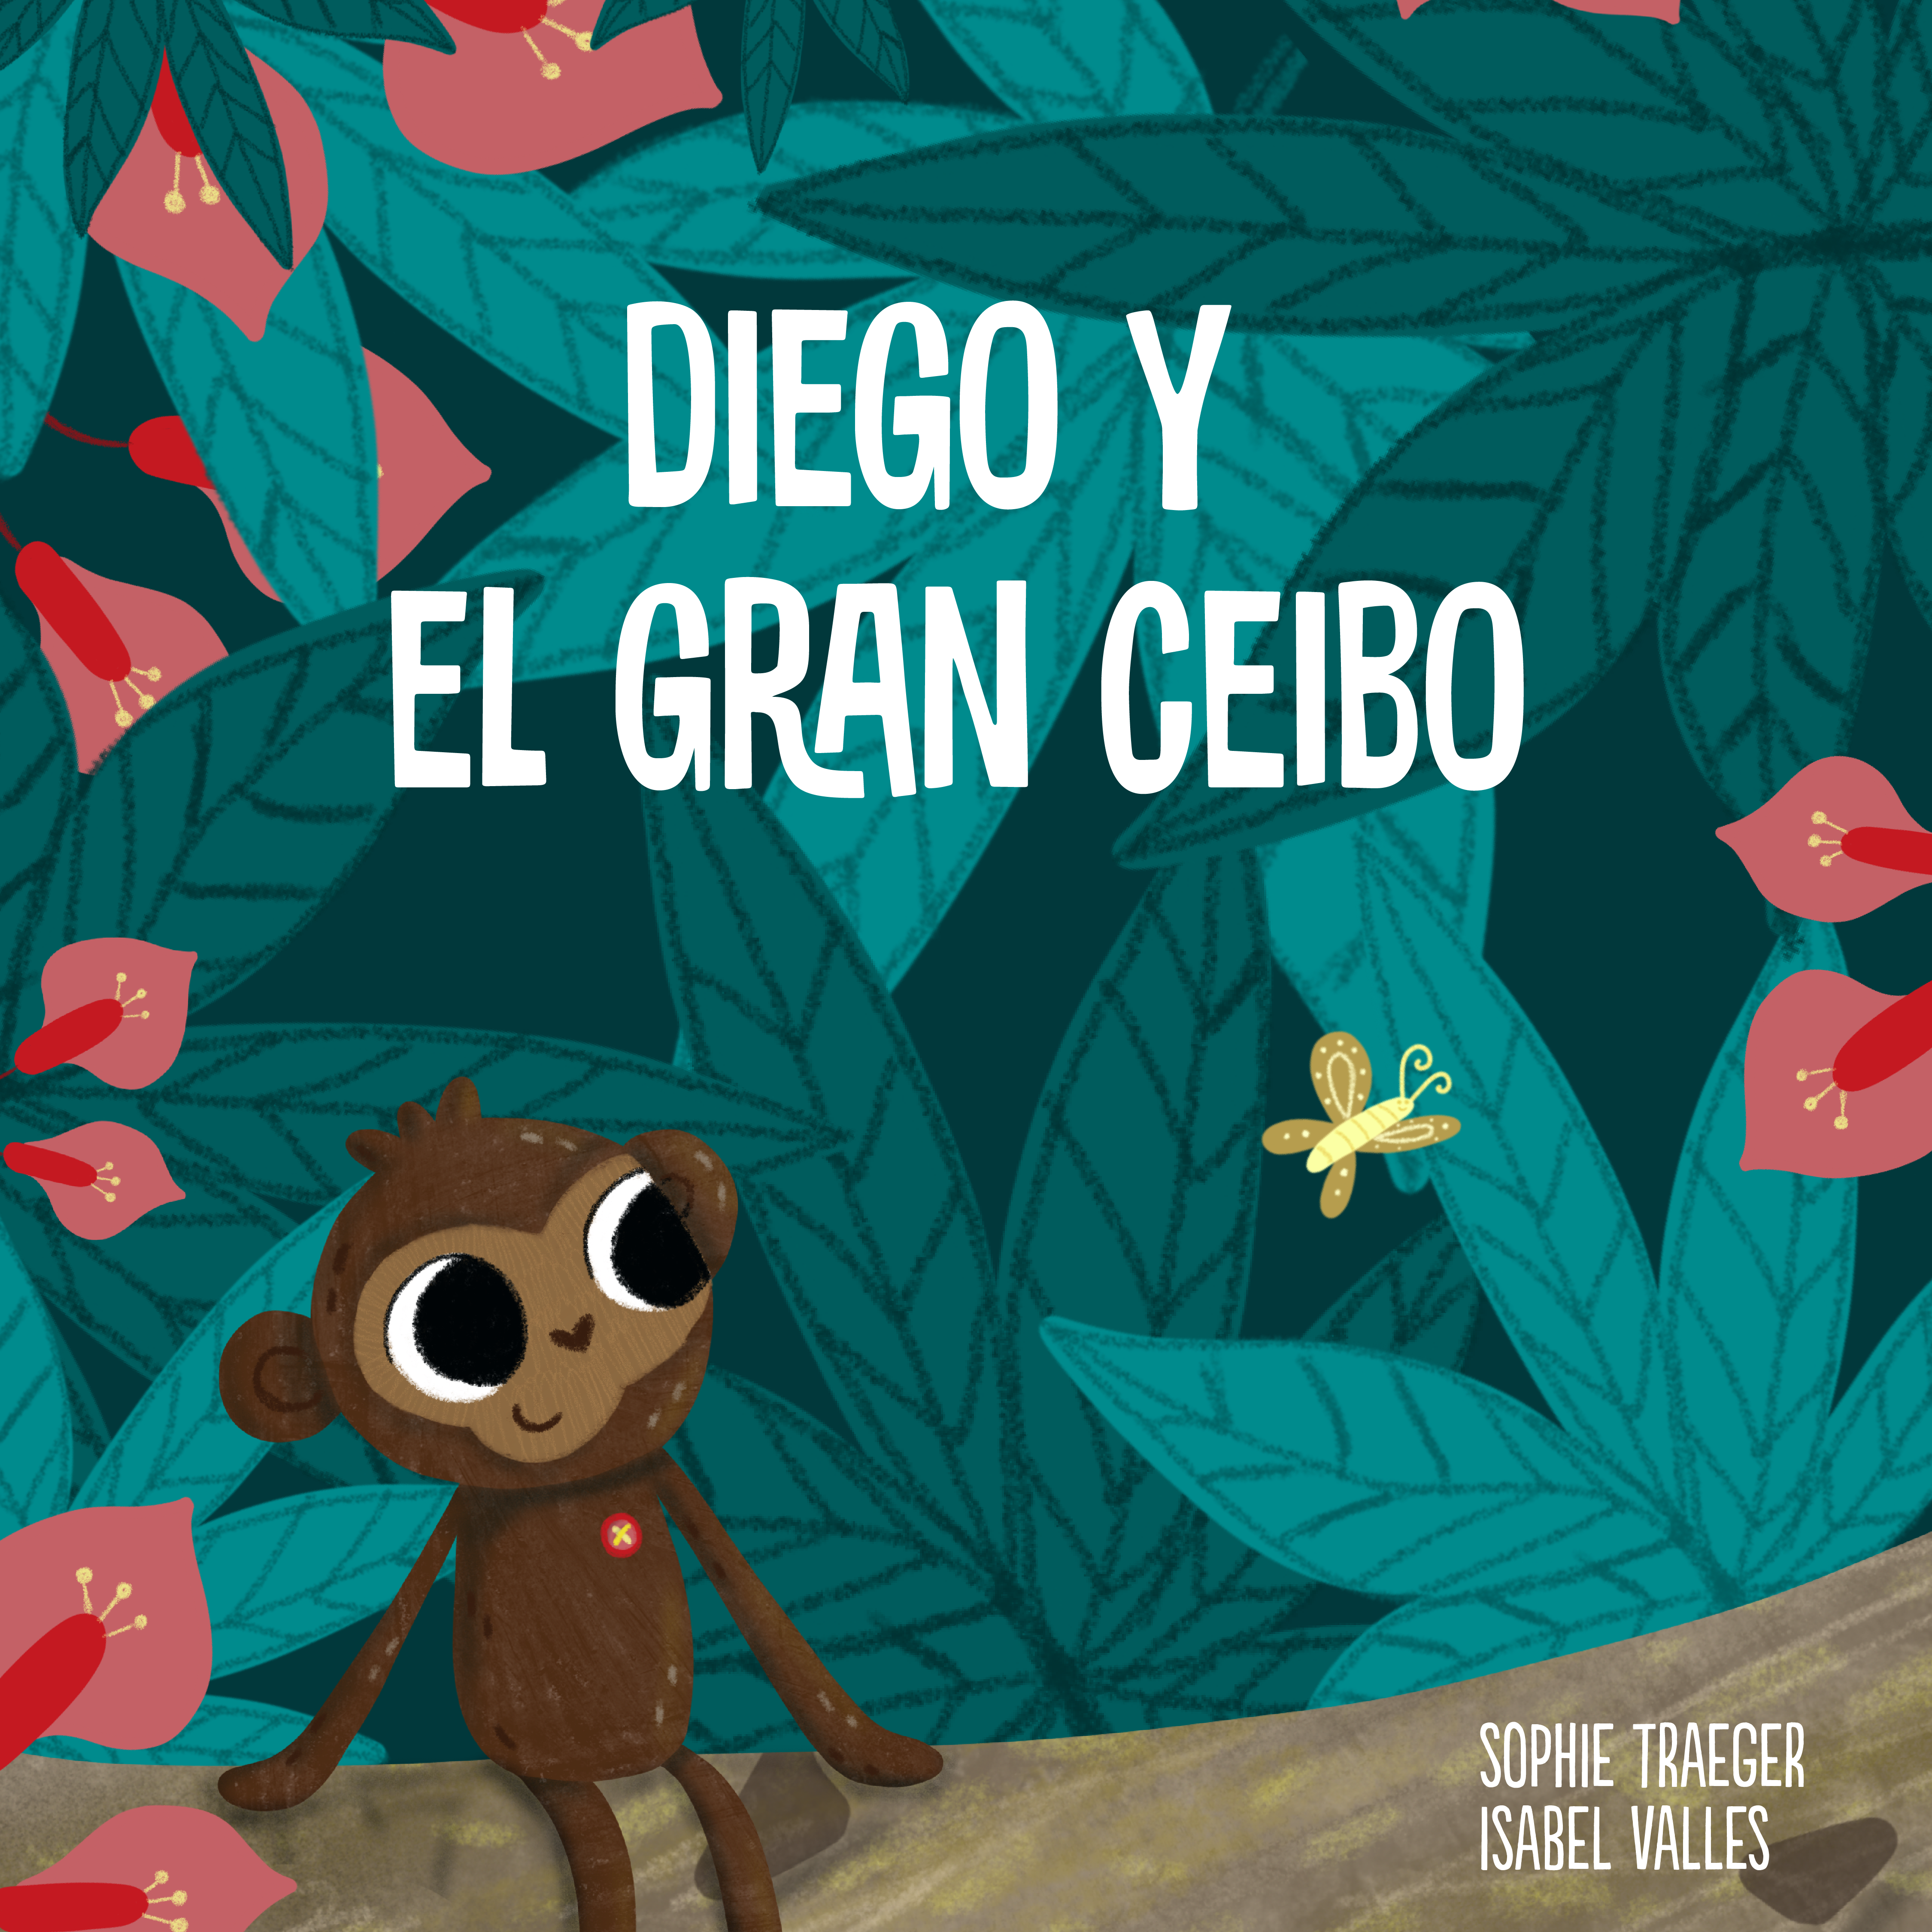 Diego y el gran Ceibo – A la quimio con mi simio